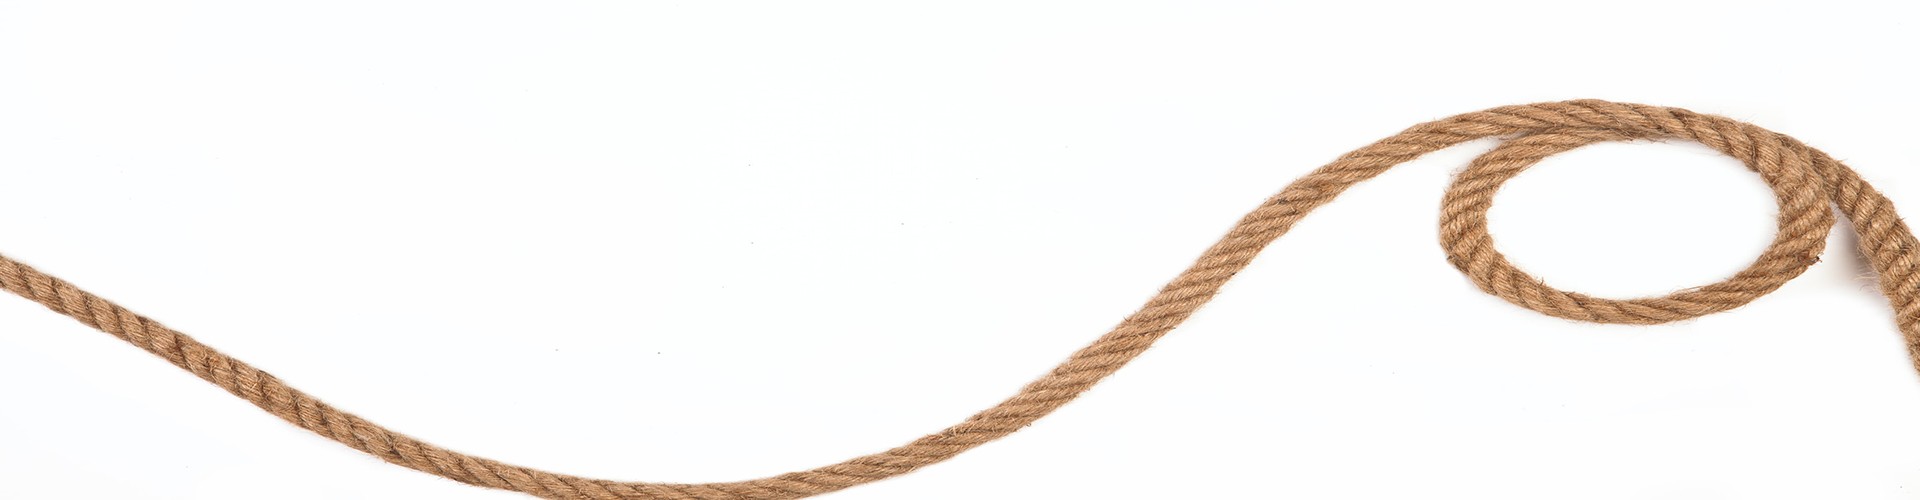 looping rope